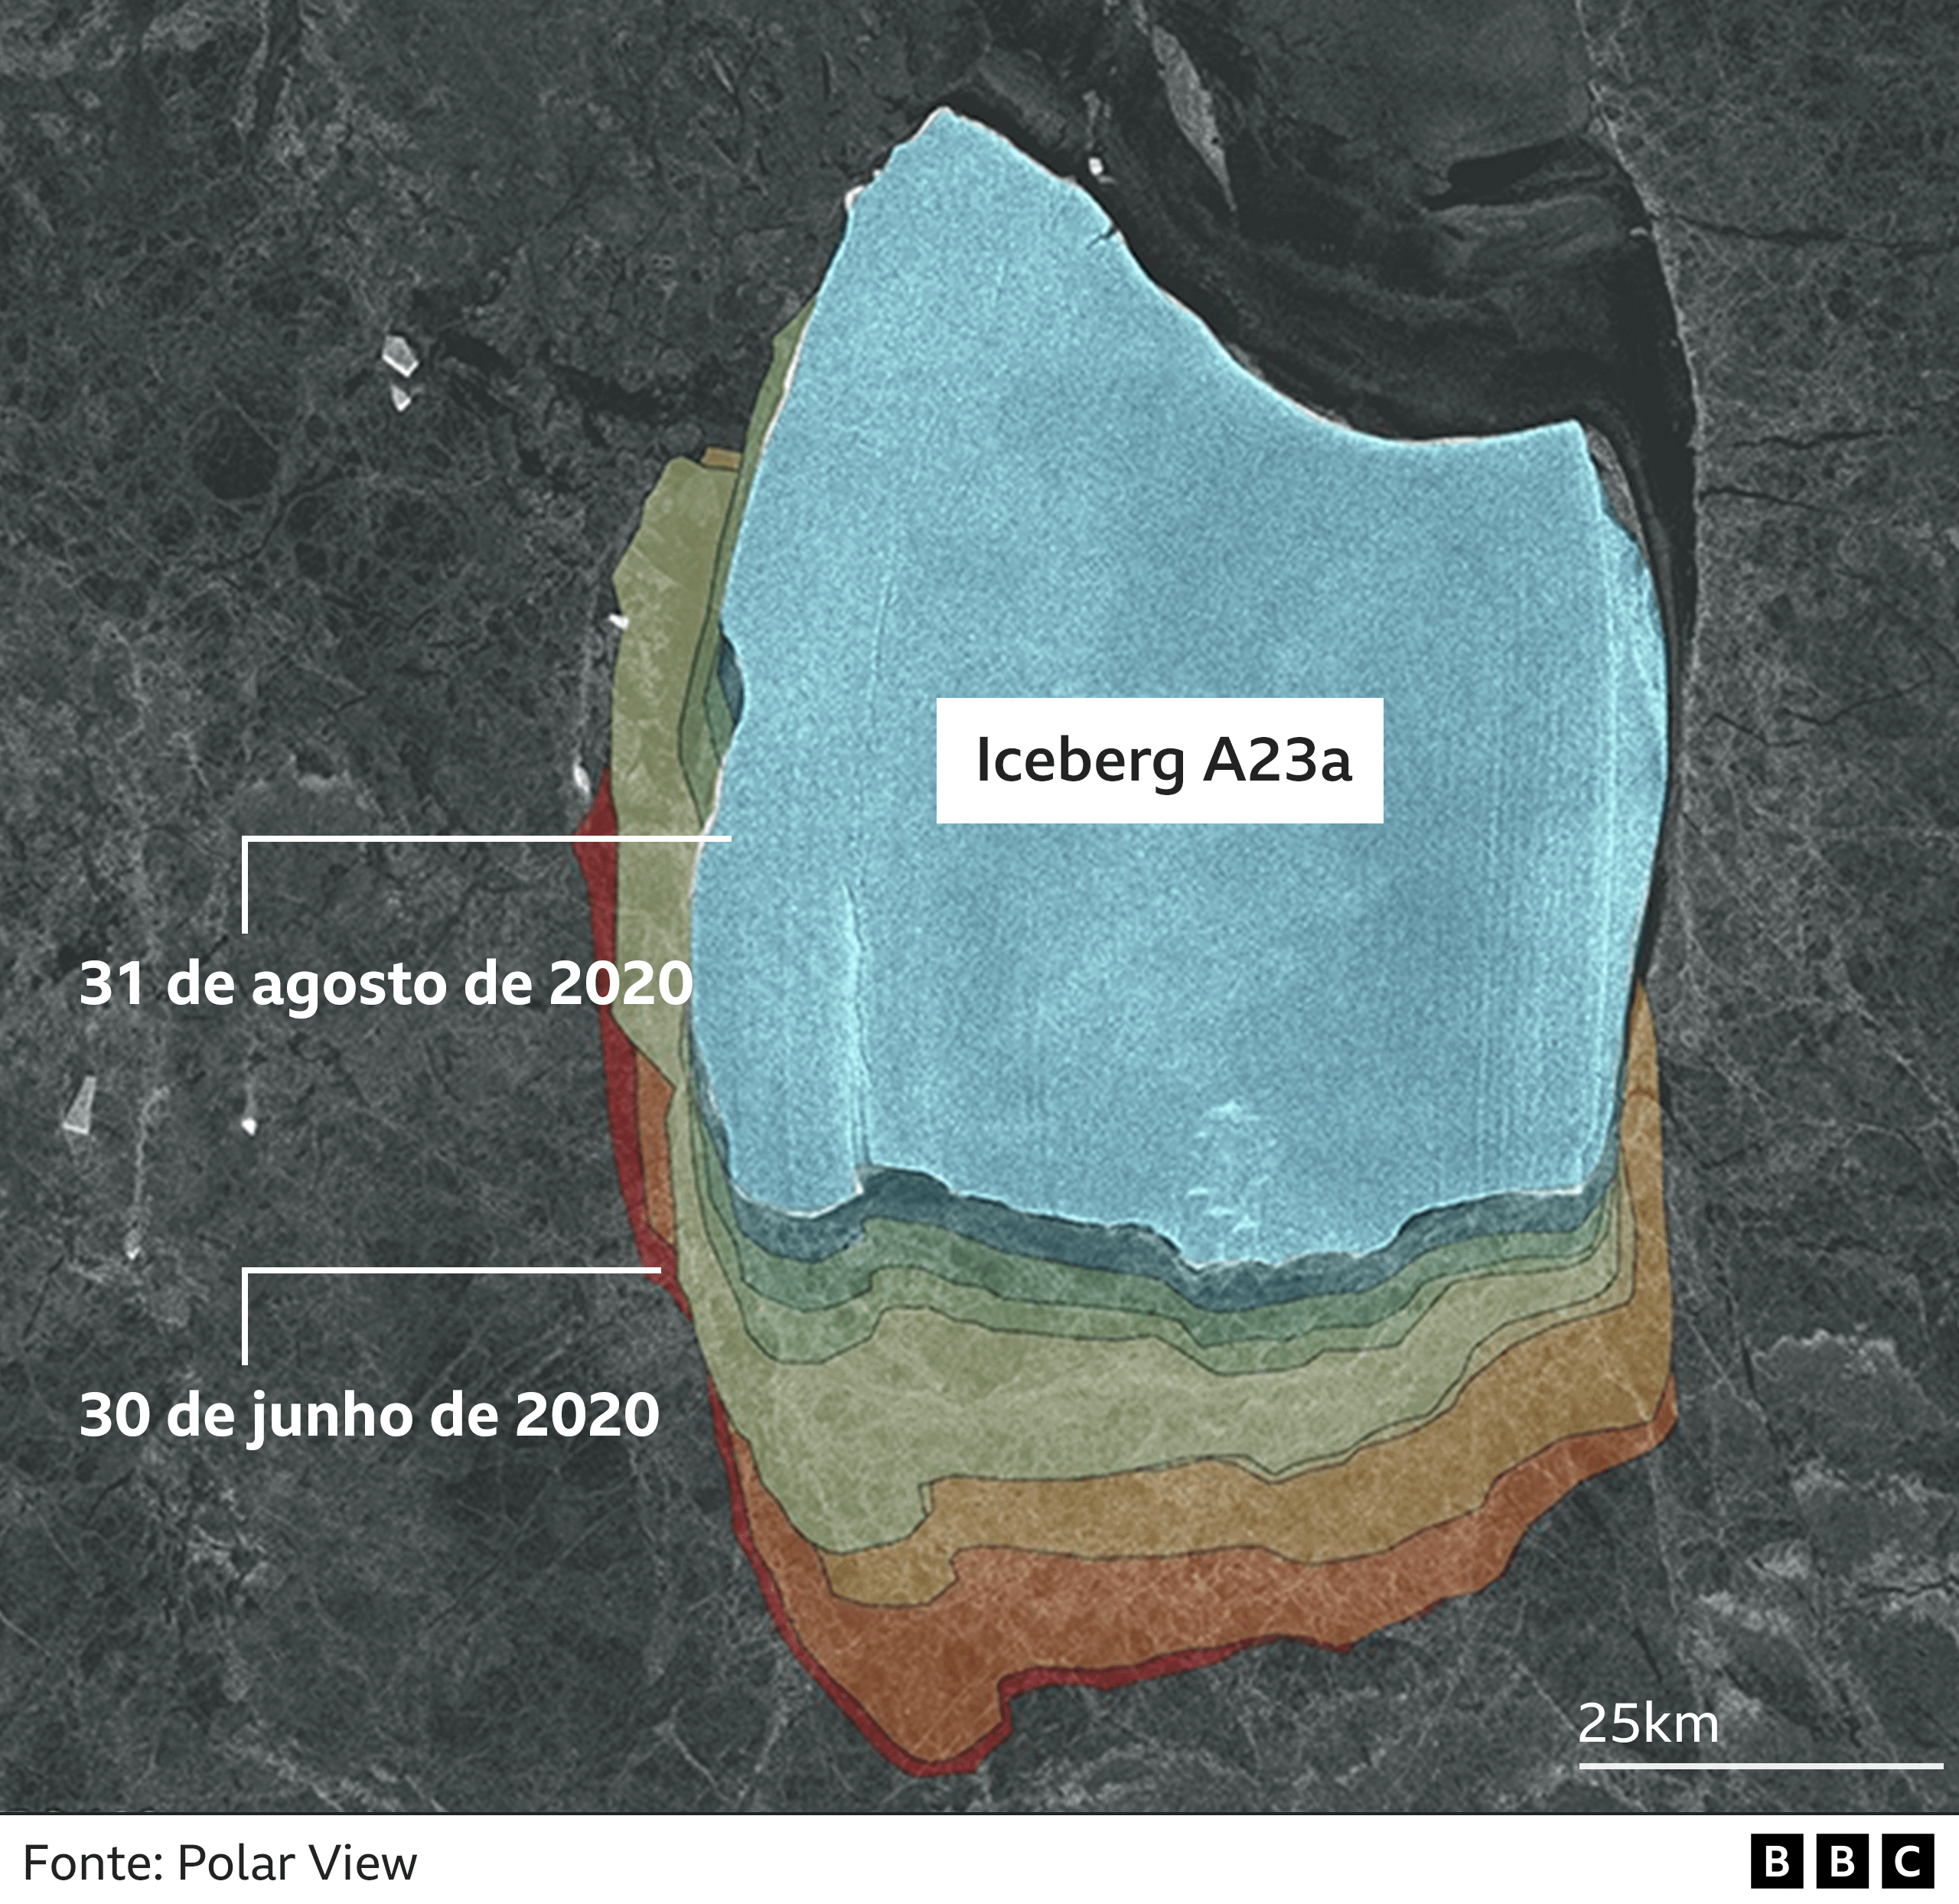 O Iceberg A23a começou a sair de seu longo sono estático em 2020